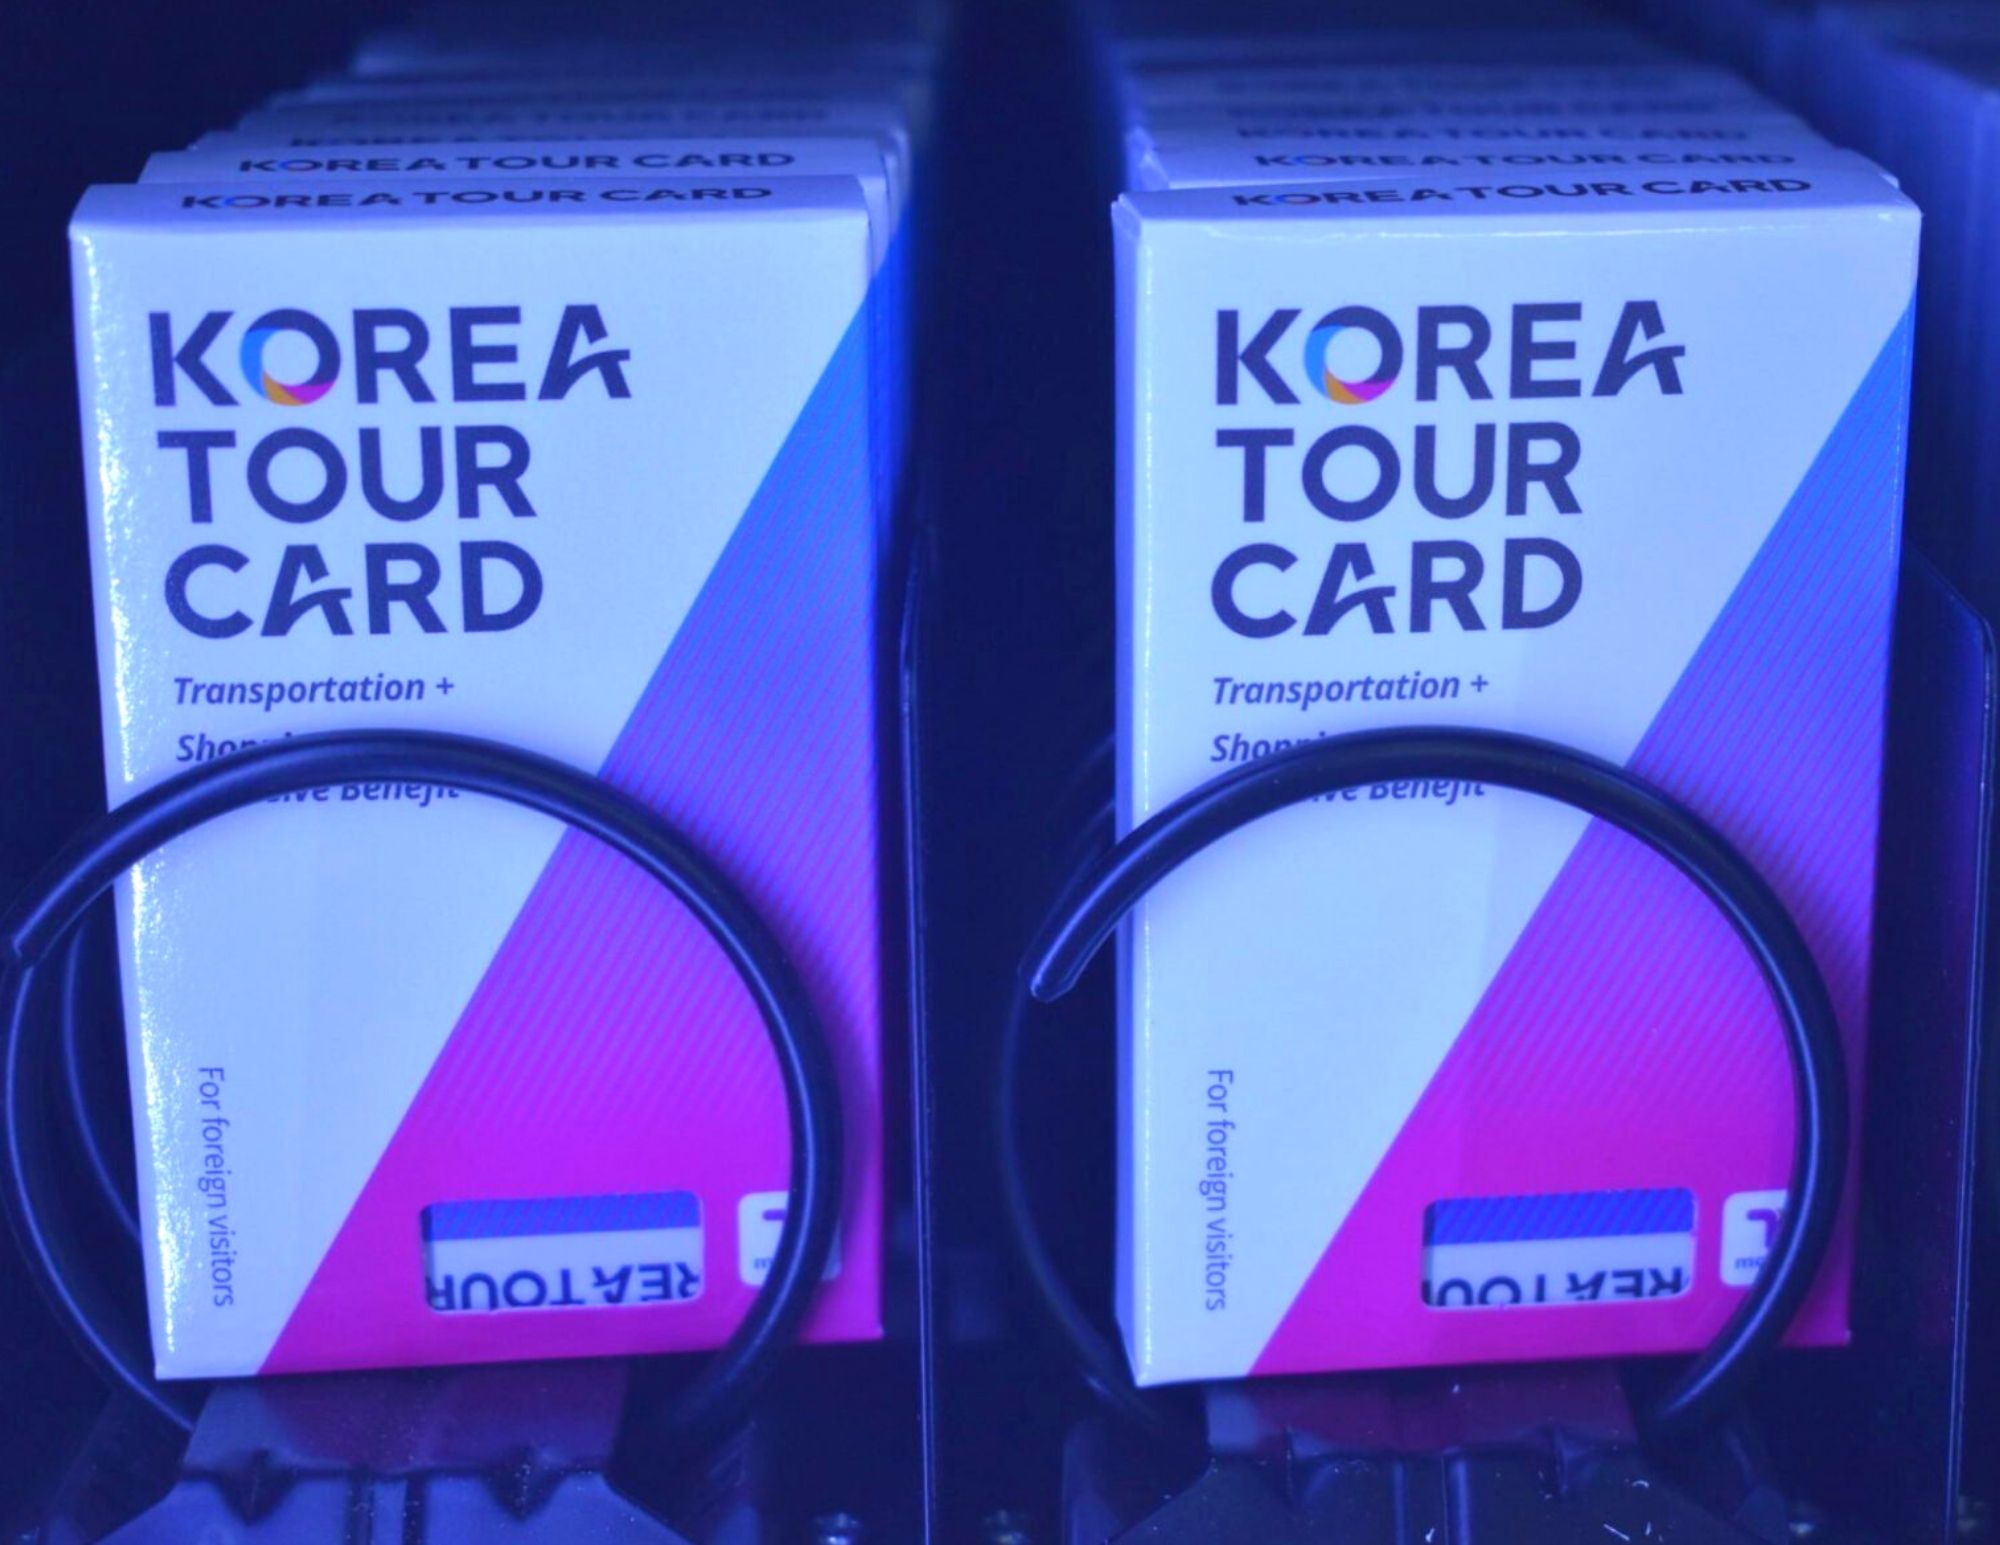 korea tour card price